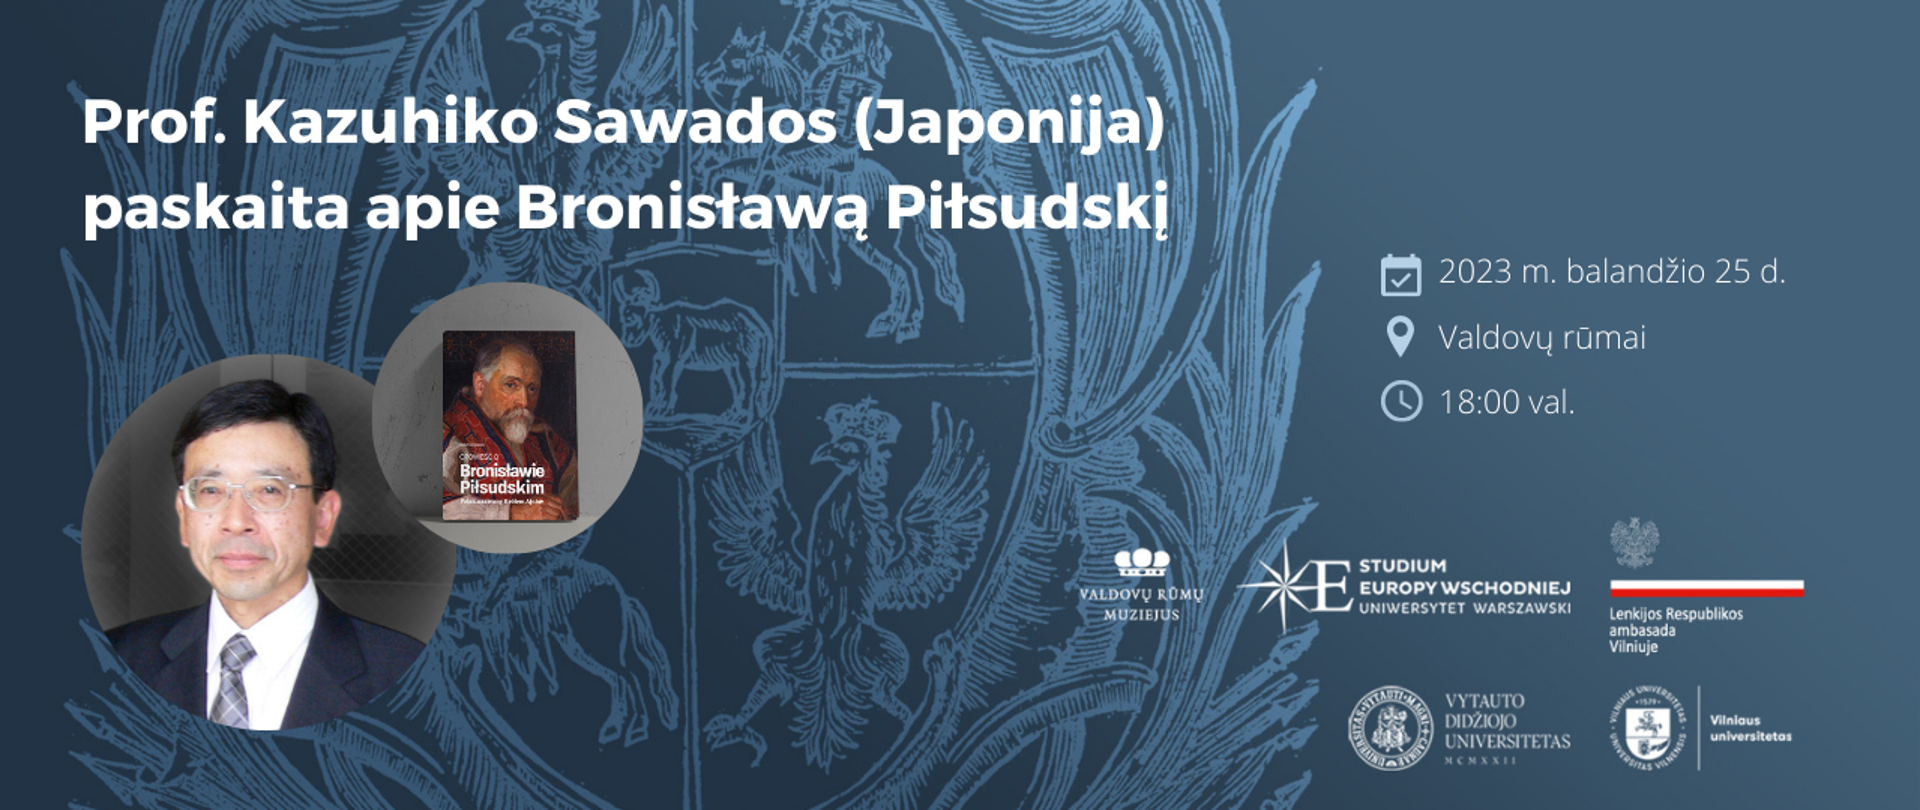 Wykład prof. Kazuhiko Sawady o Bronisławie Piłsudskim